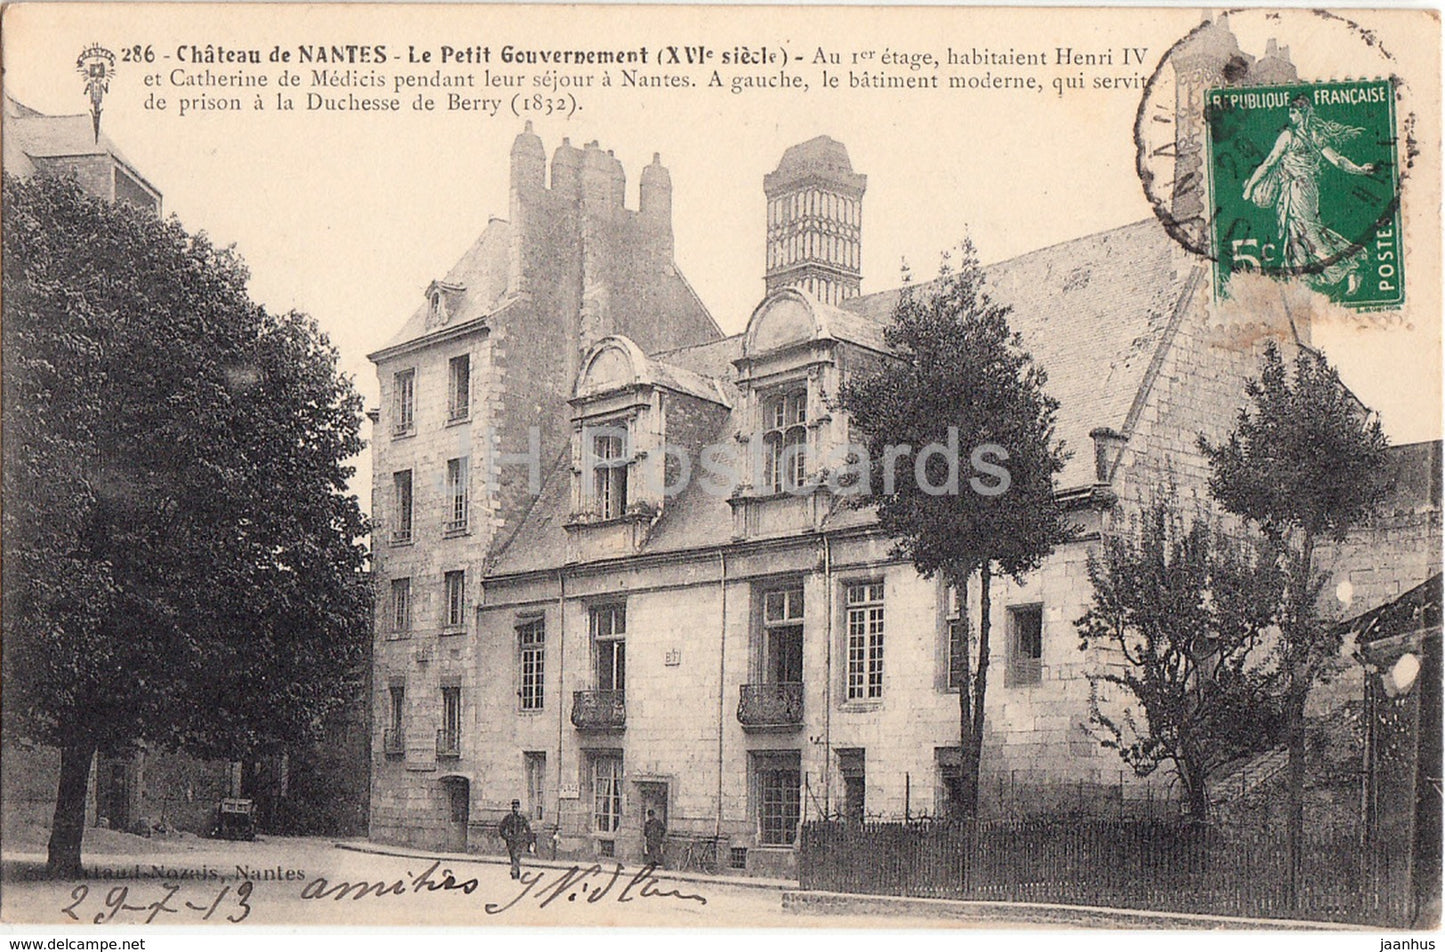 Chateau de Nantes - Le Petit Gouvernement - castle - 11 - old postcard - 1913 - France - used